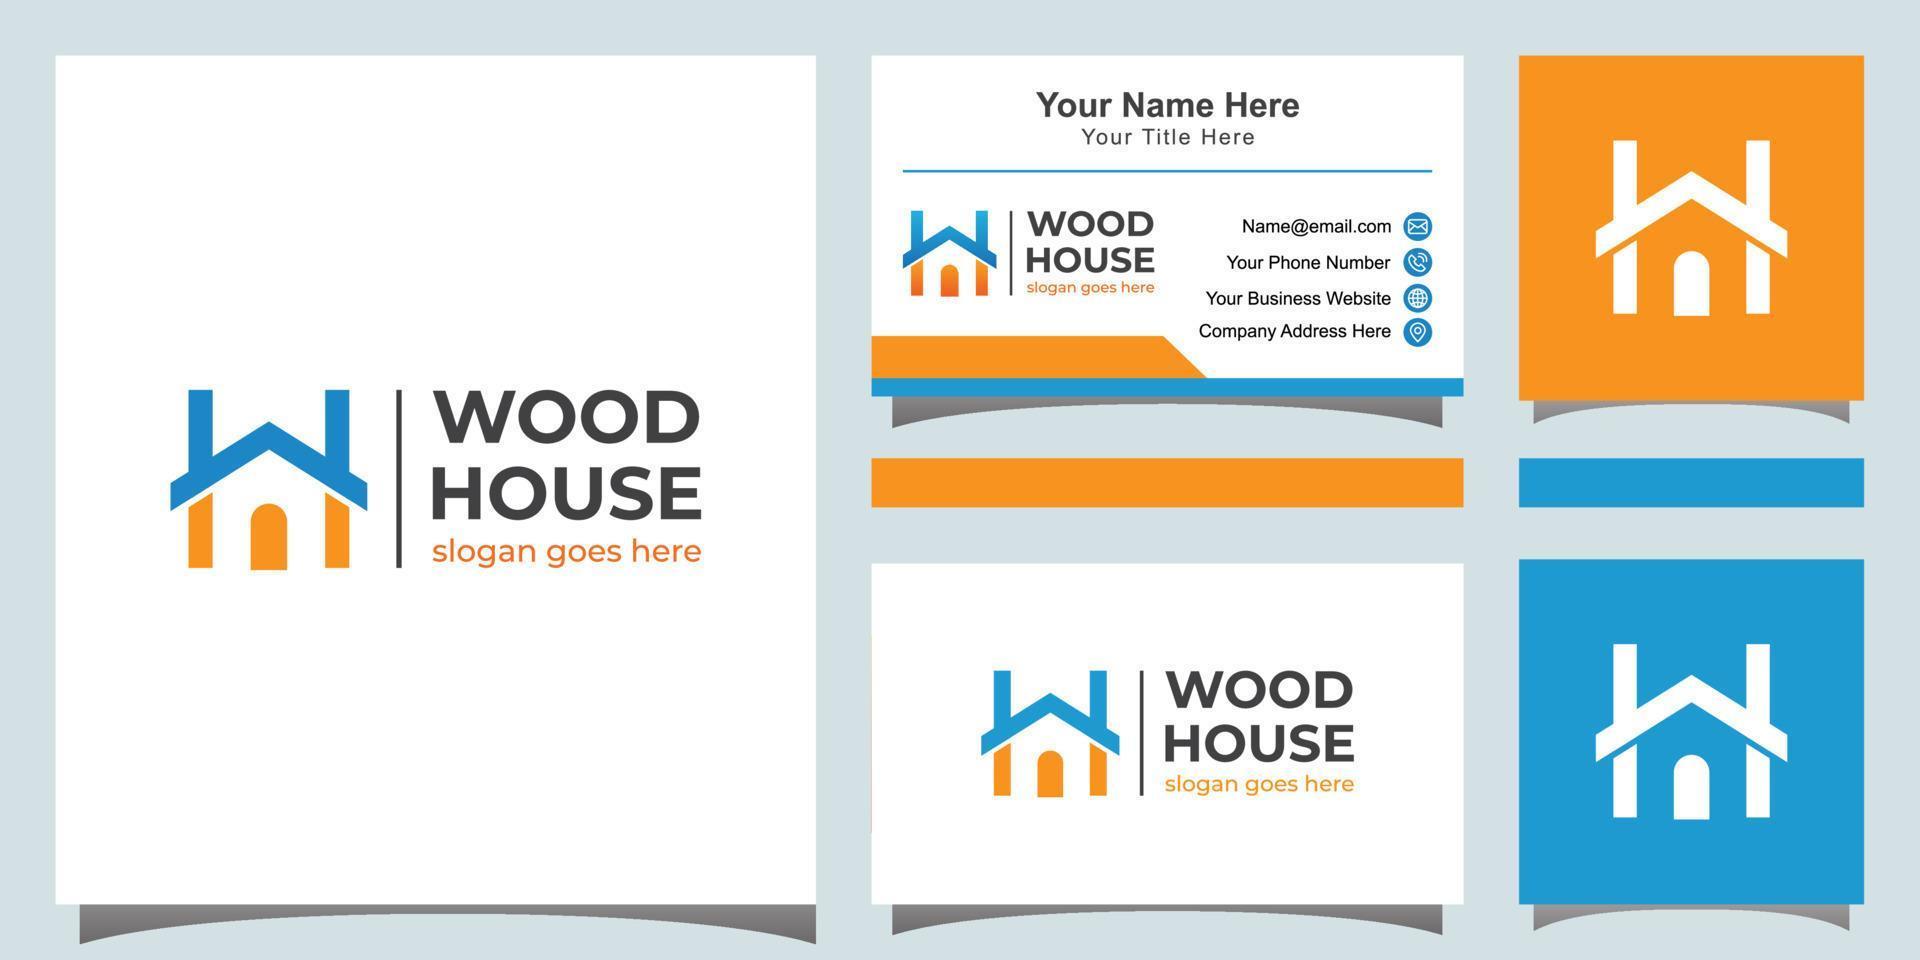 modernes farbiges Holzhaus-Logo. buchstabe w und h für hauslogosymbol mit visitenkarte vektor